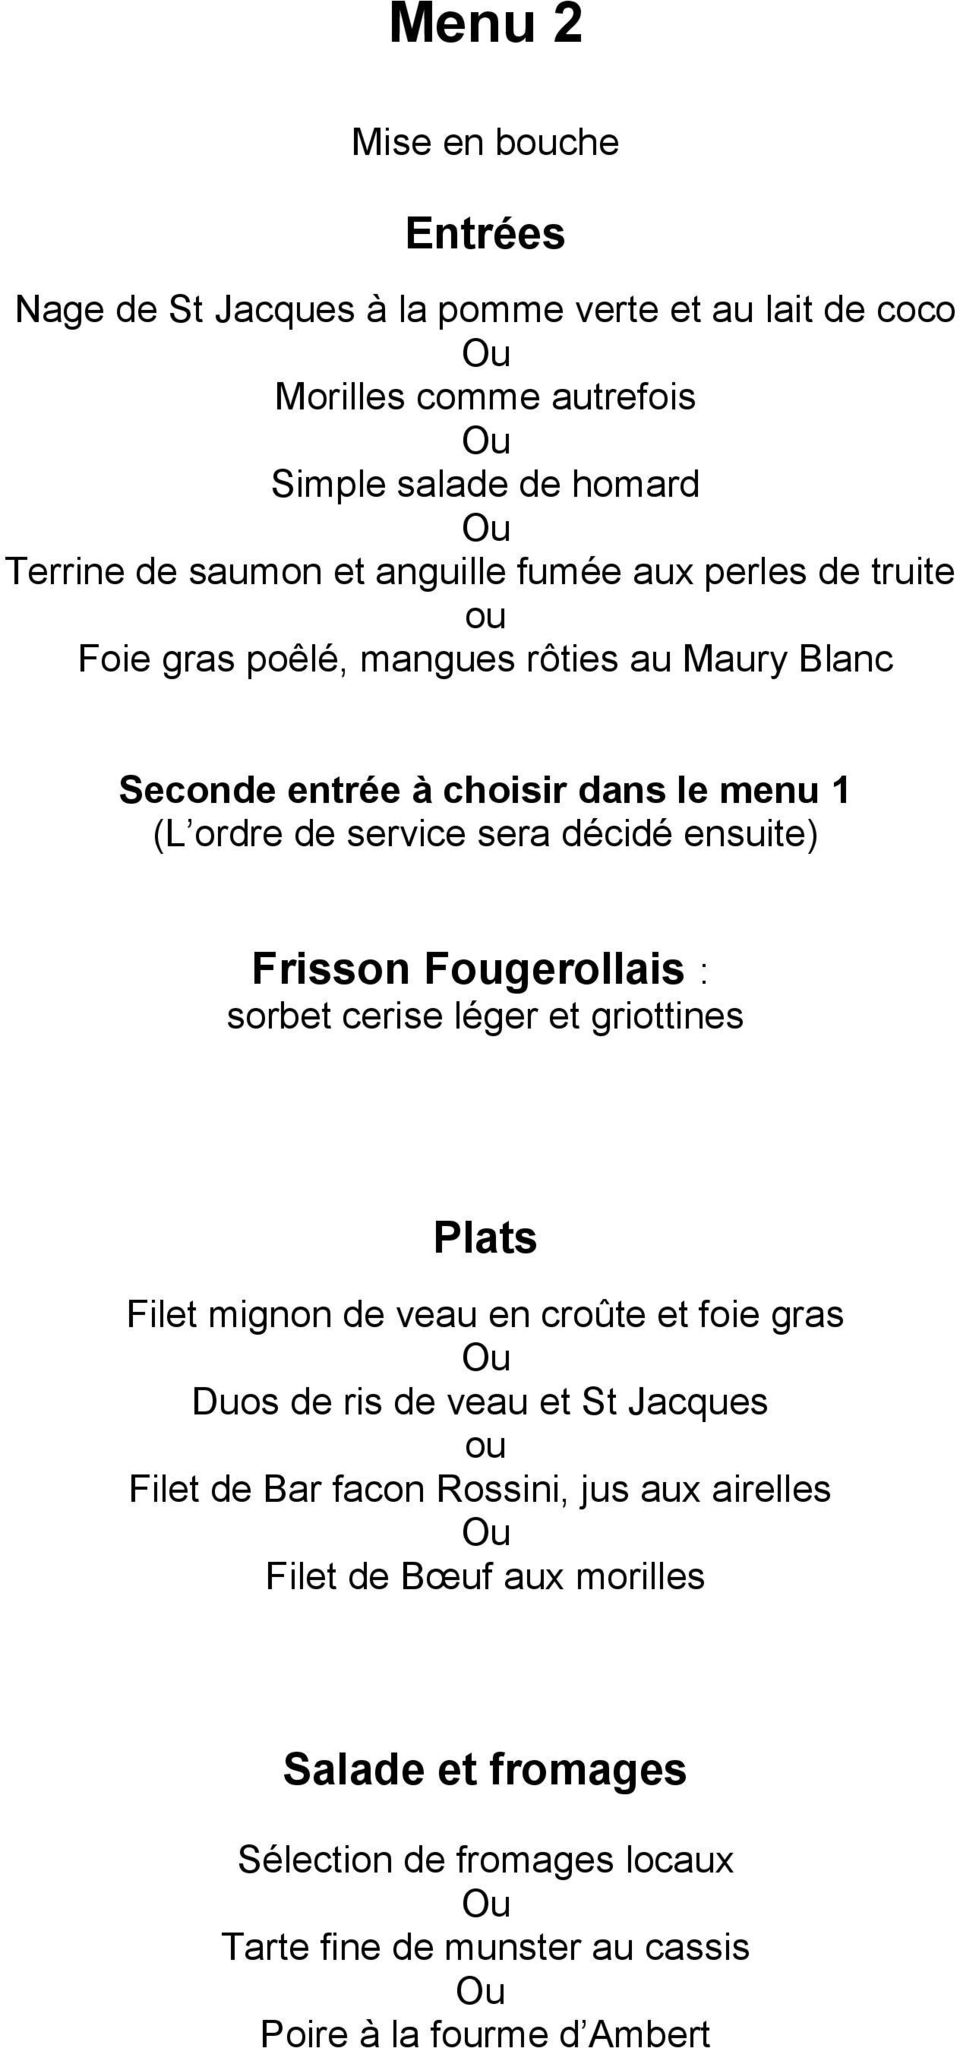 ensuite) Frisson Fougerollais : sorbet cerise léger et griottines Plats Filet mignon de veau en croûte et foie gras Duos de ris de veau et St Jacques ou Filet